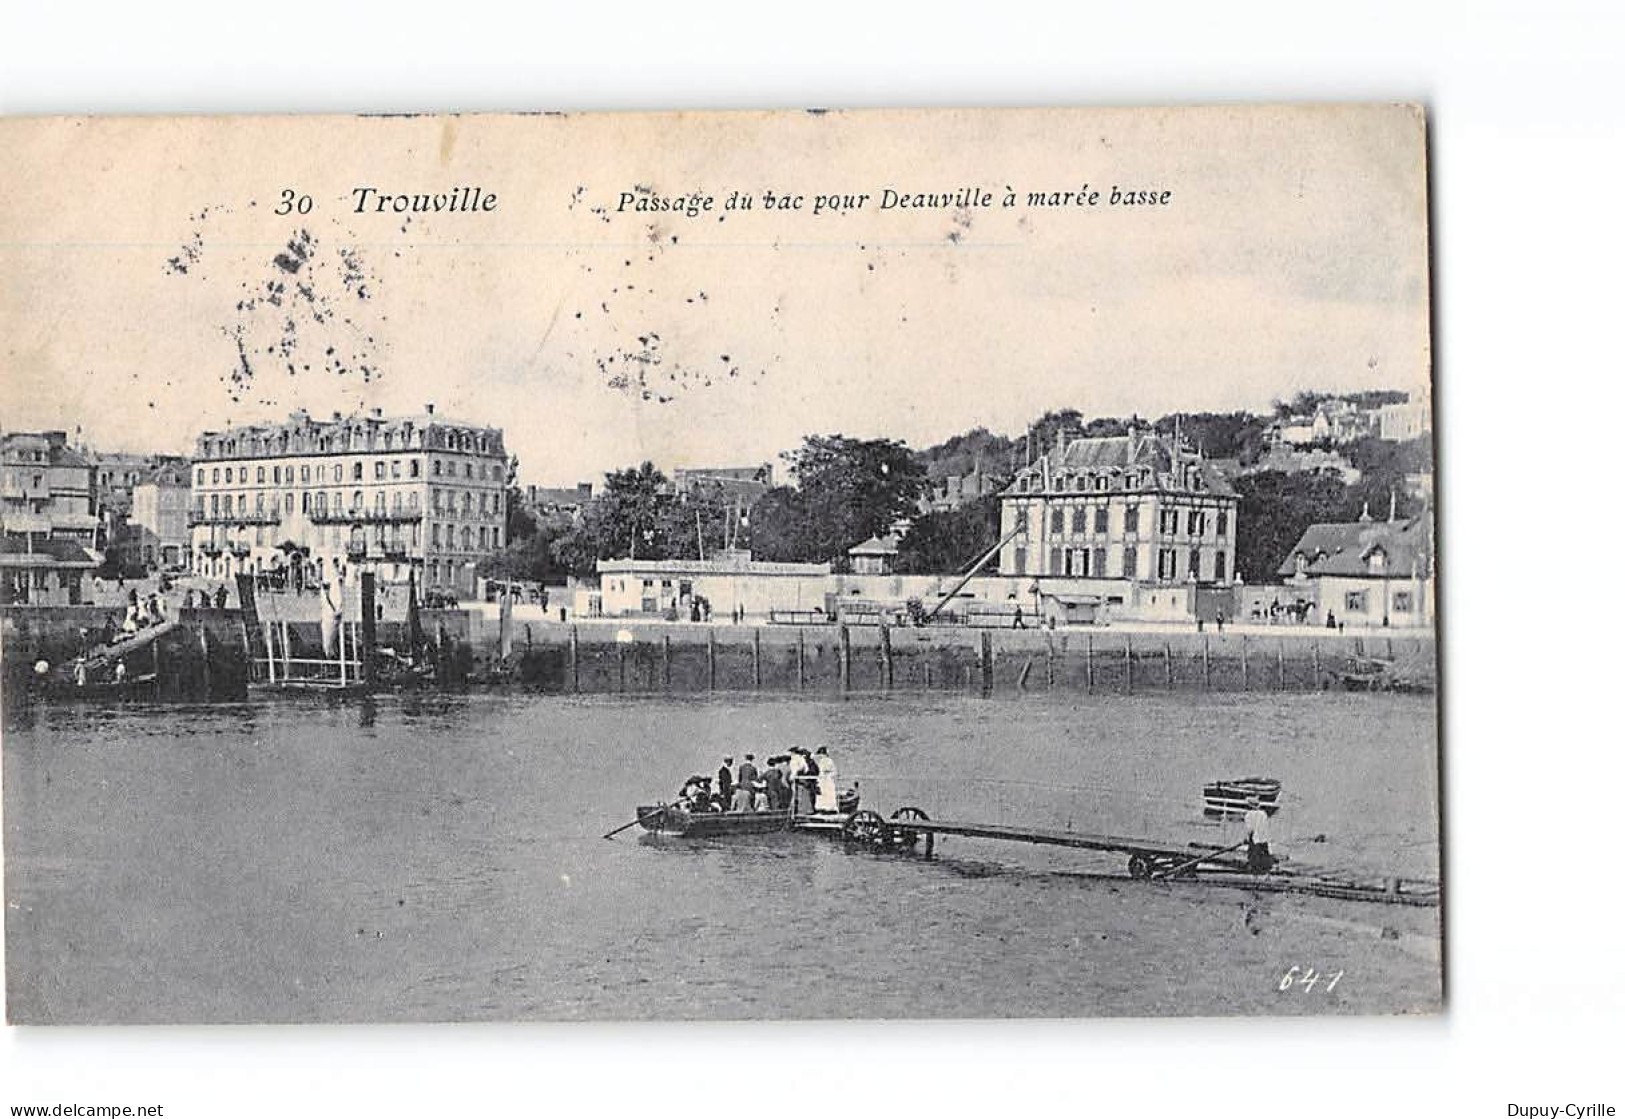 TROUVILLE - Passage Du Bac Pour Deauville à Marée Basse - Très Bon état - Trouville